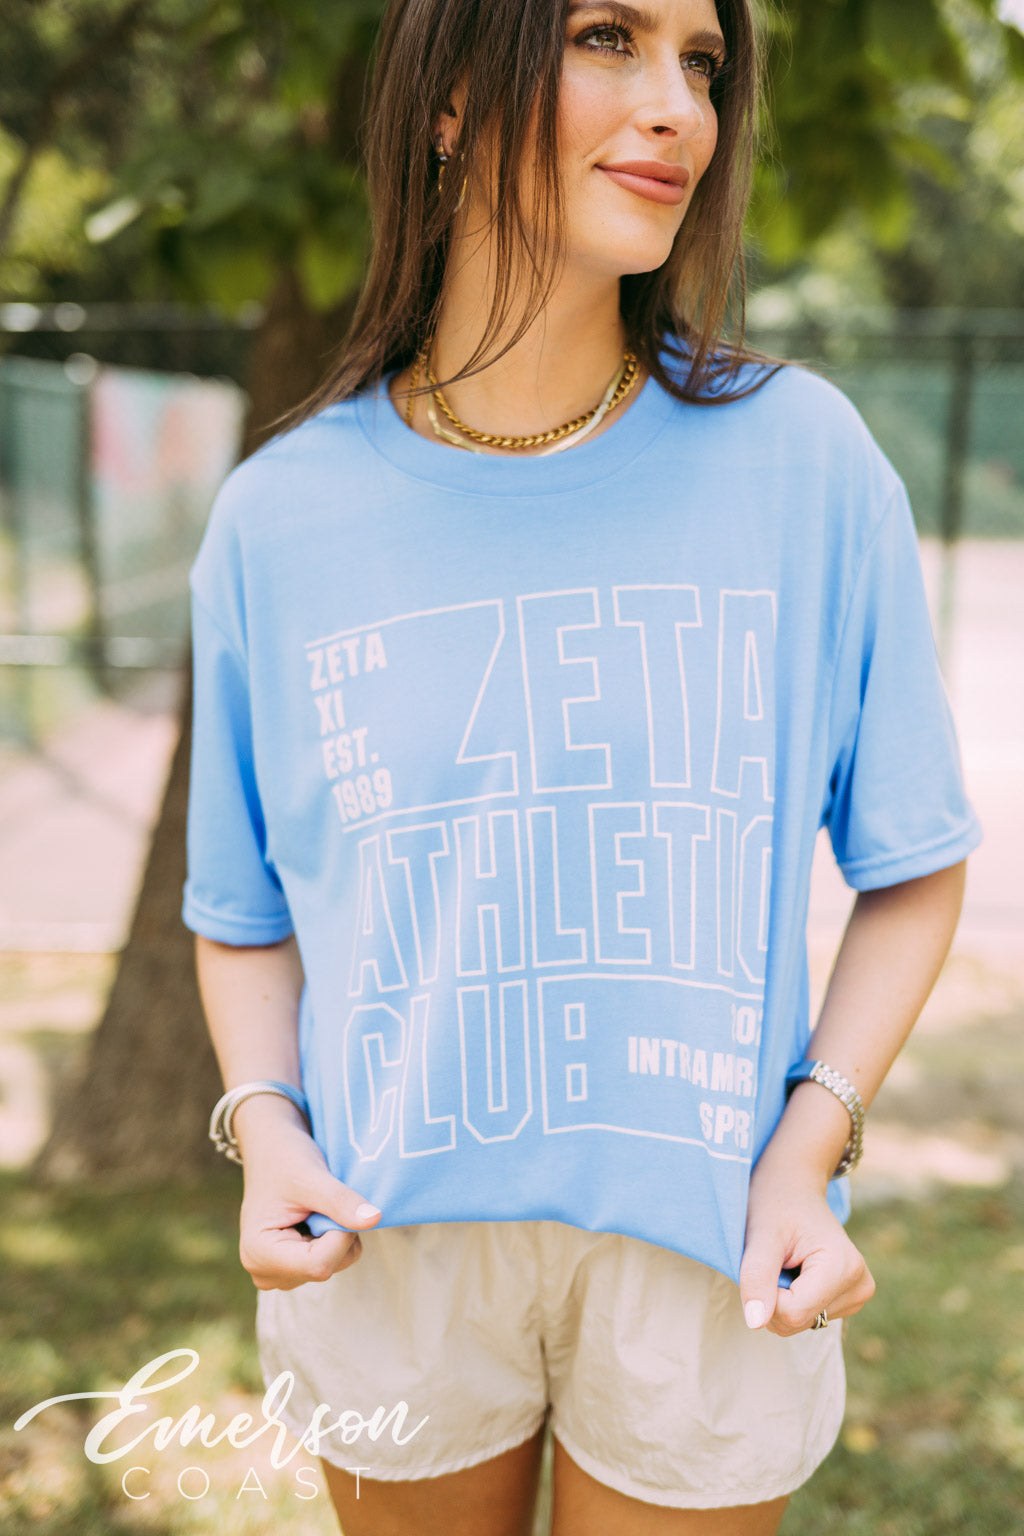 Zeta Athletic Club Intramural Shirt